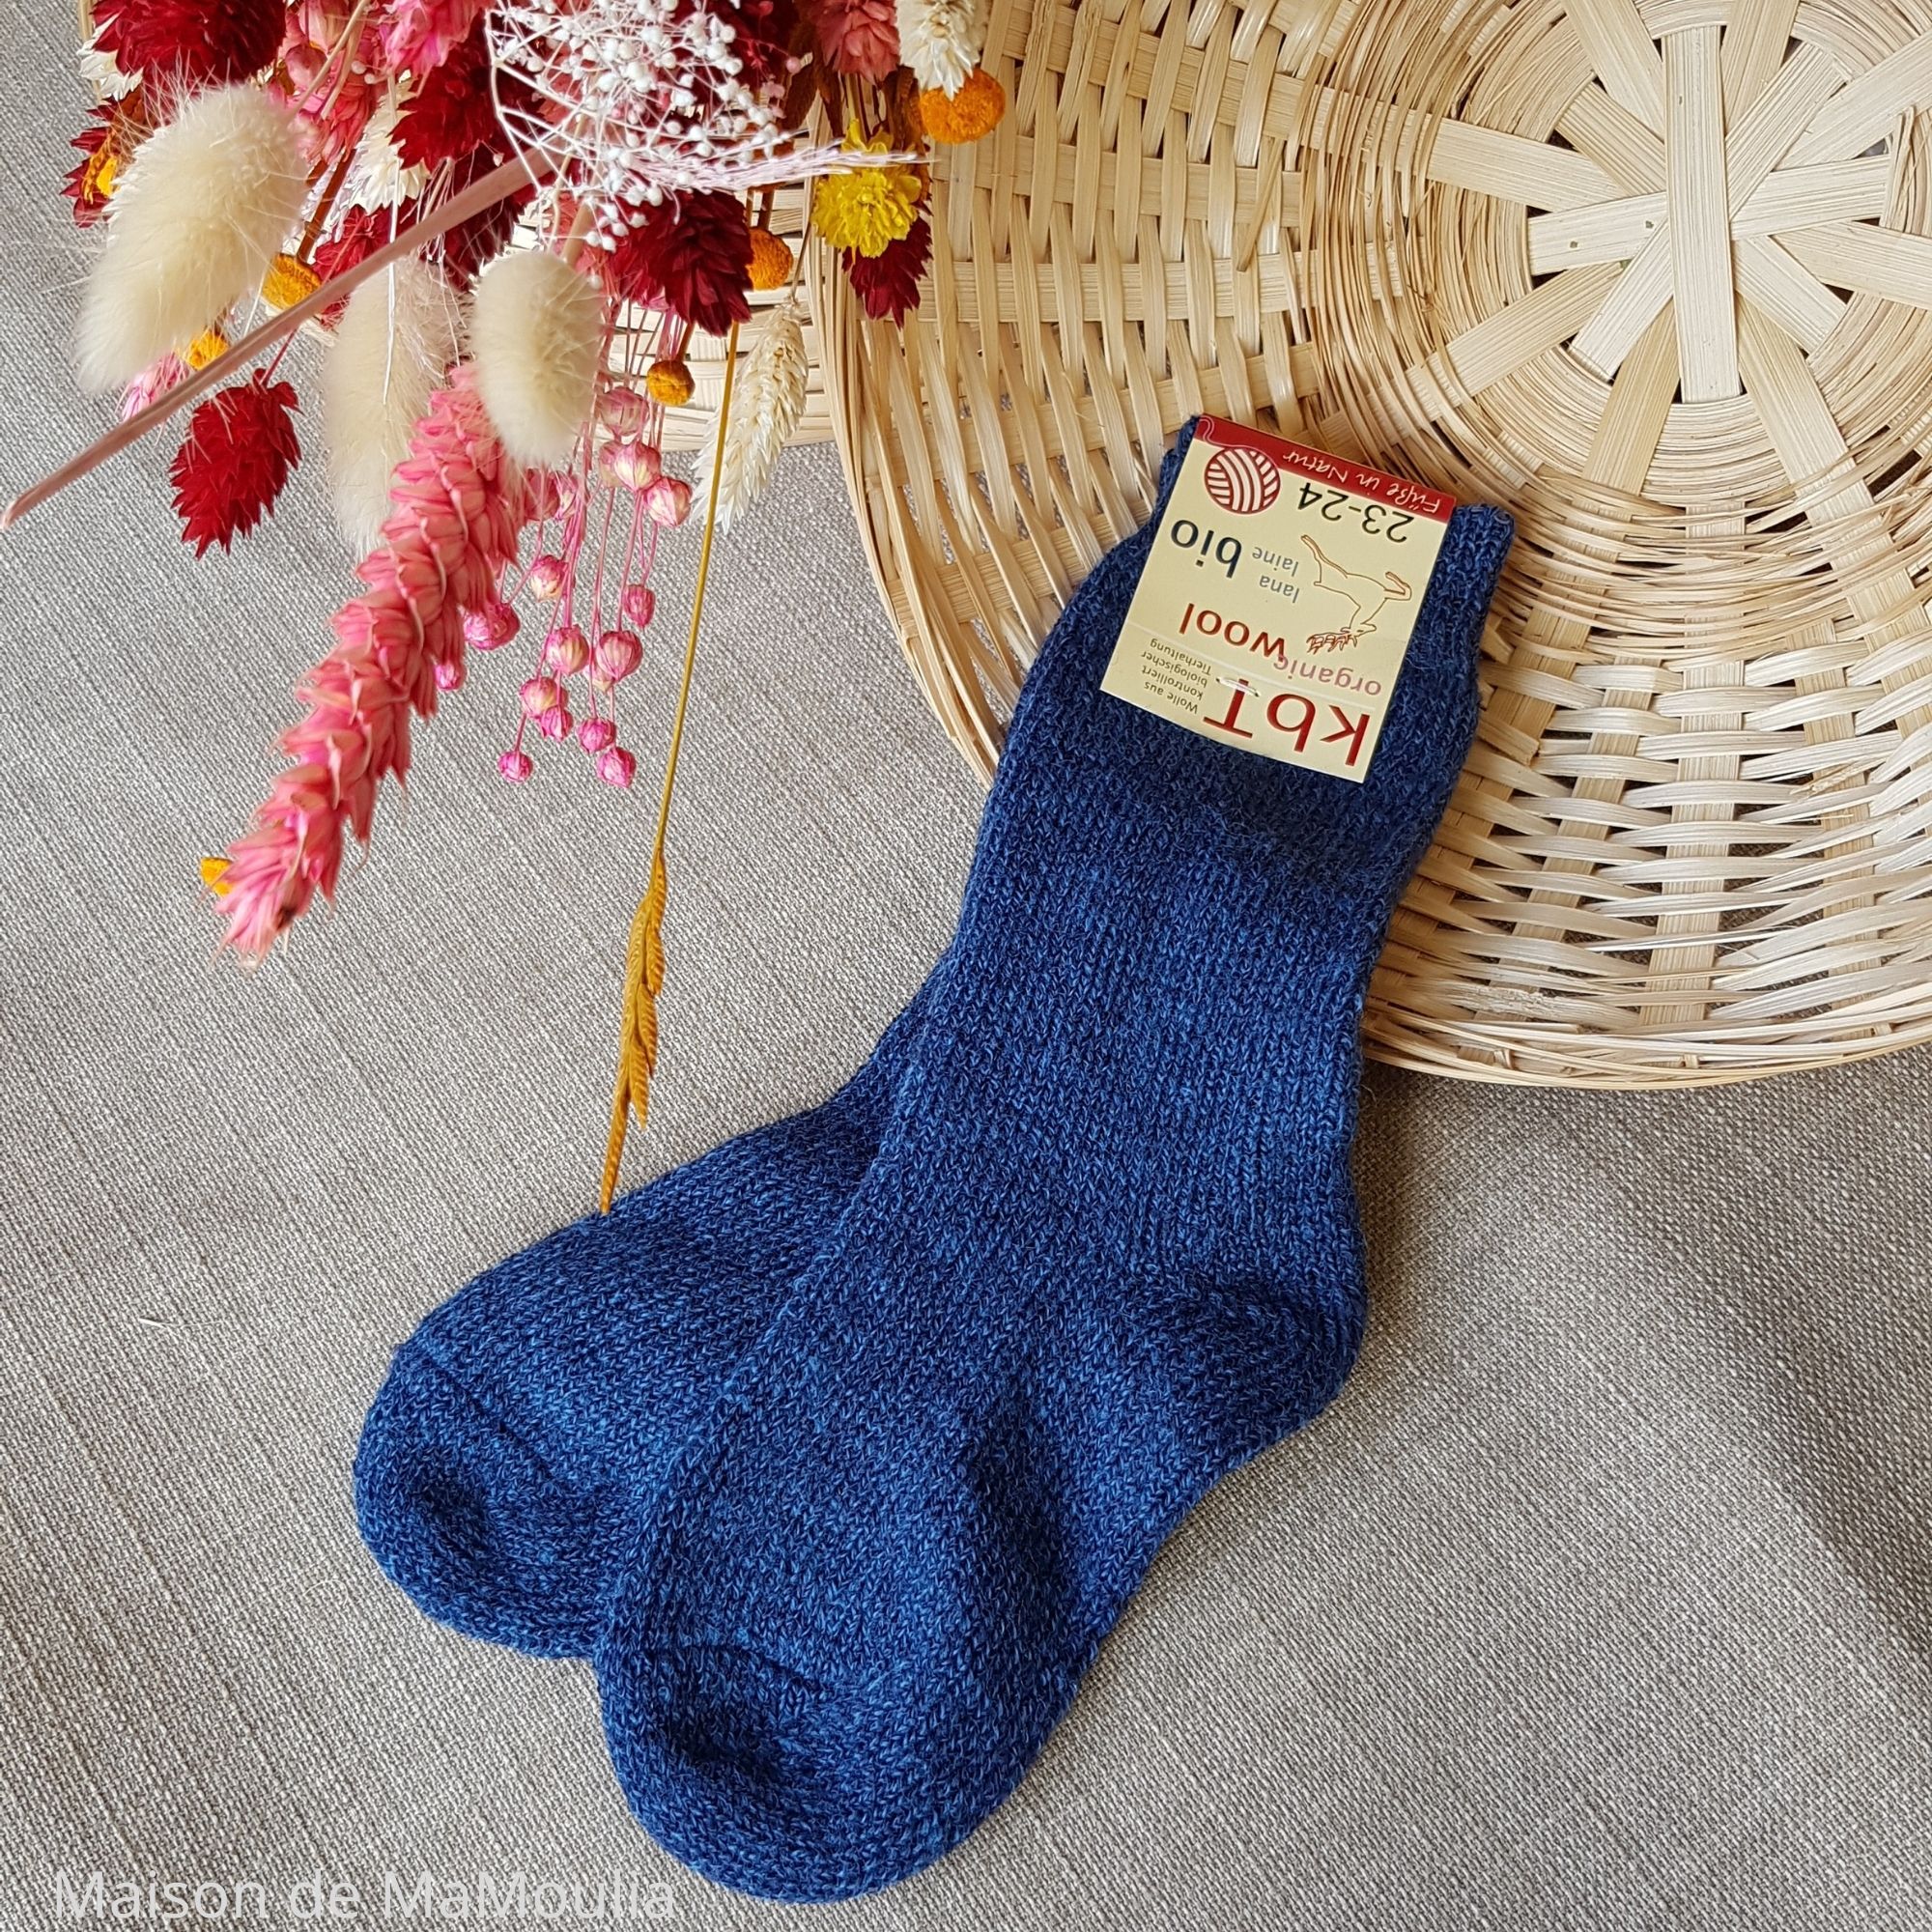 10-chaussettes-chaudes-pure-laine-bio-ecologique-hirsch-natur-bebe-enfant-maison-de-mamoulia-gris-tres-epaisses-bleu-jean